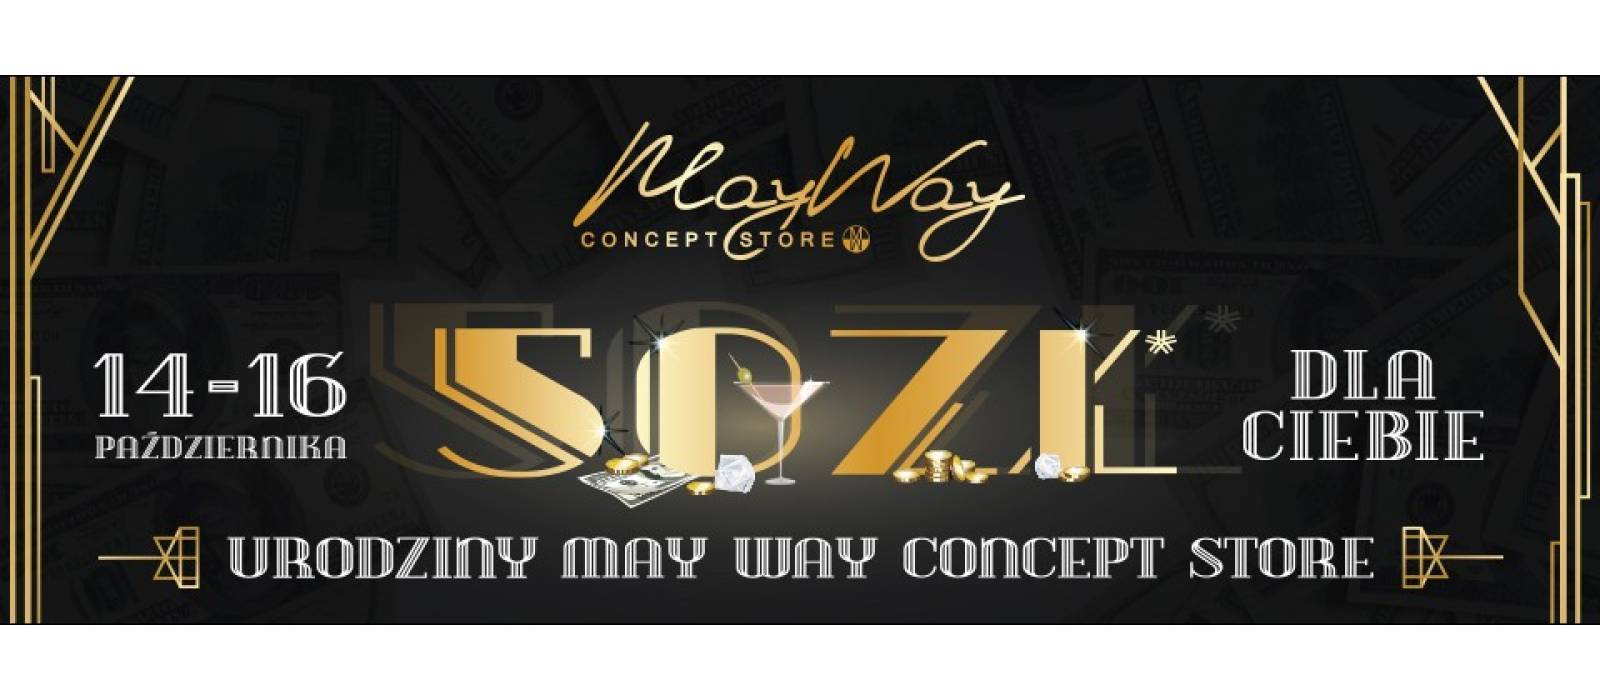 50zł dla Ciebie w Urodziny May Way Concept Store! - 1